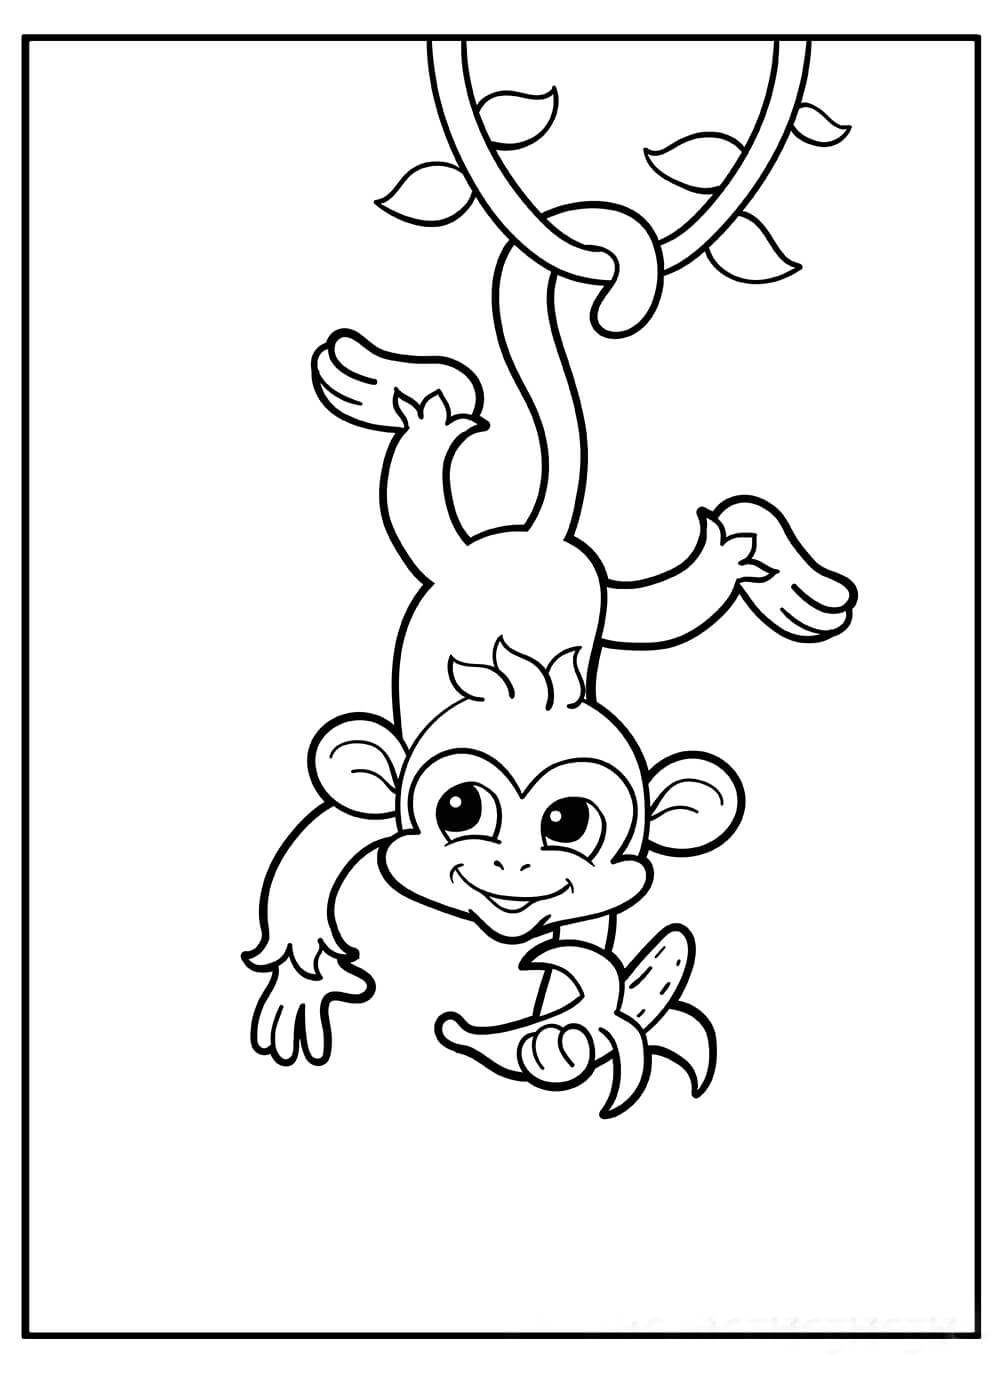 Macaco segura Banana e Pendurado de Cabeça para Baixo em uma Árvore para colorir